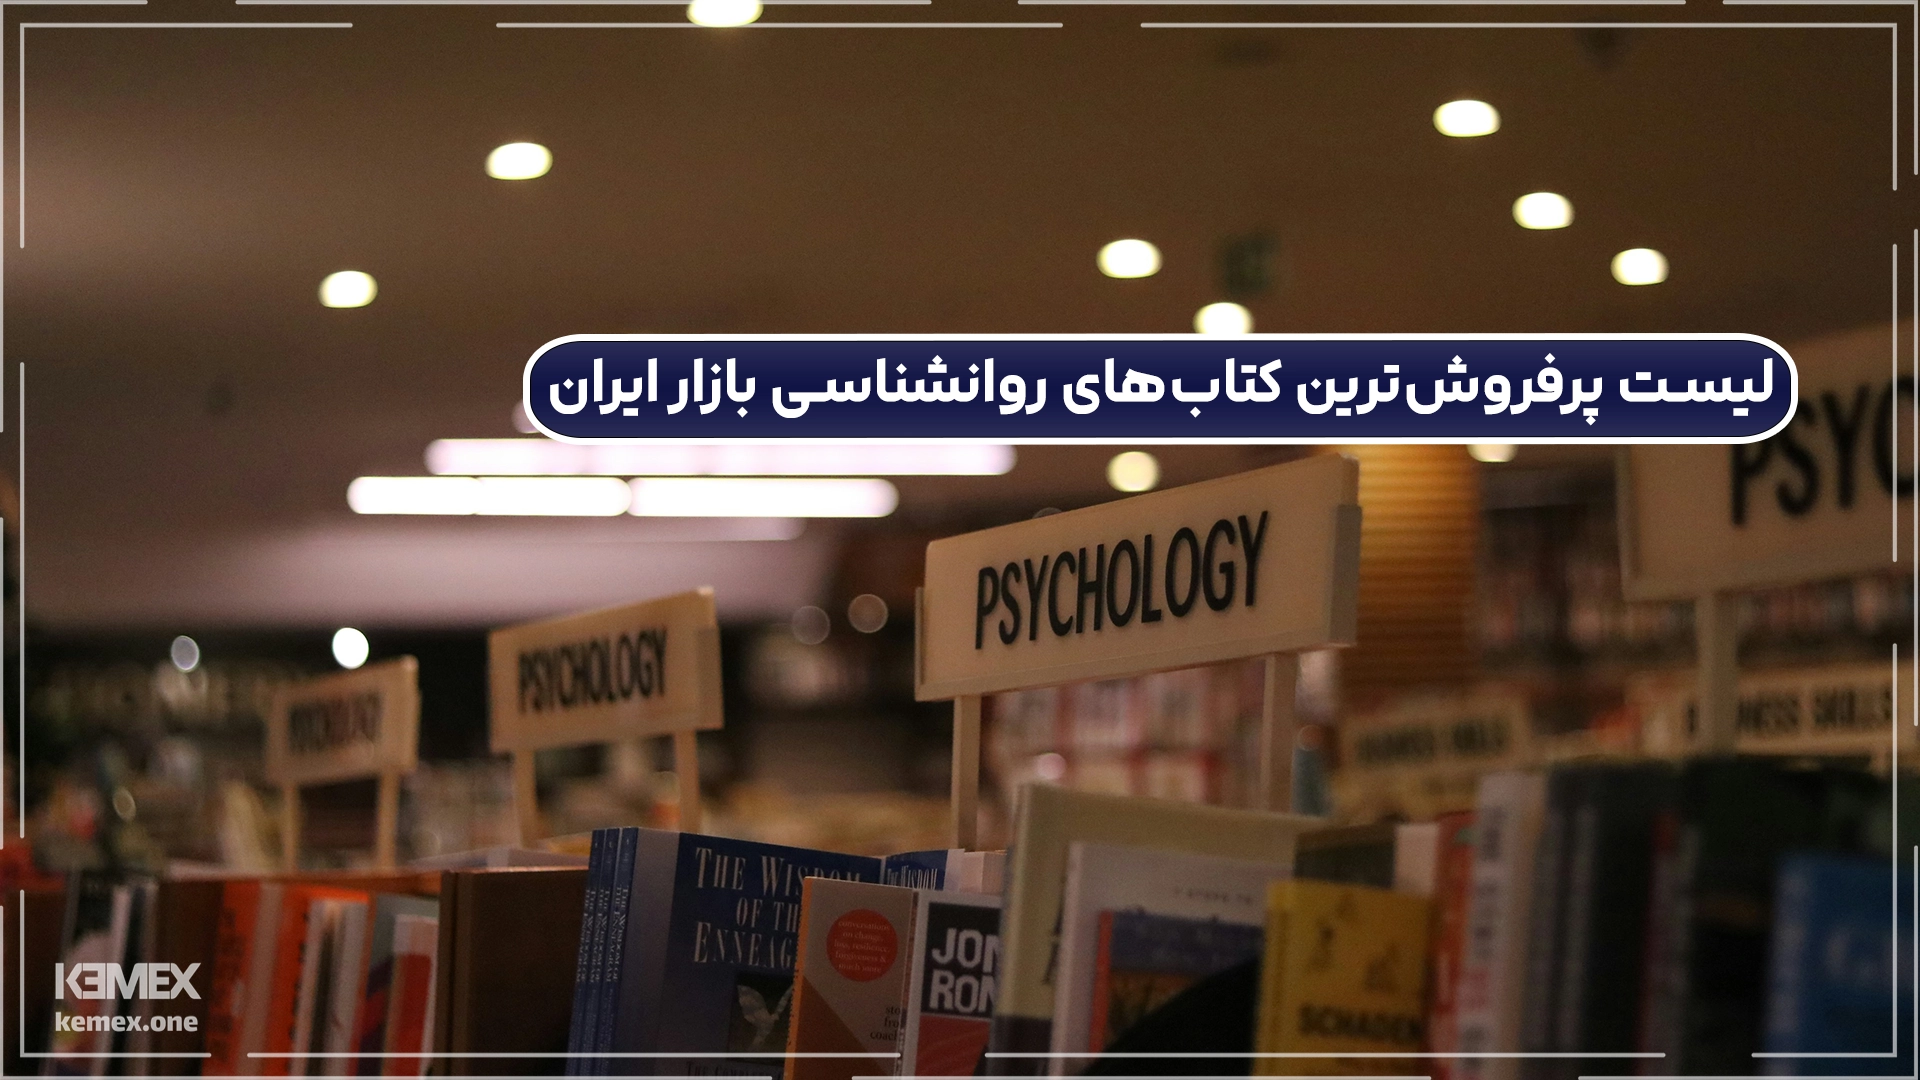 پر فروش ترین کتاب های روانشناسی در ایران